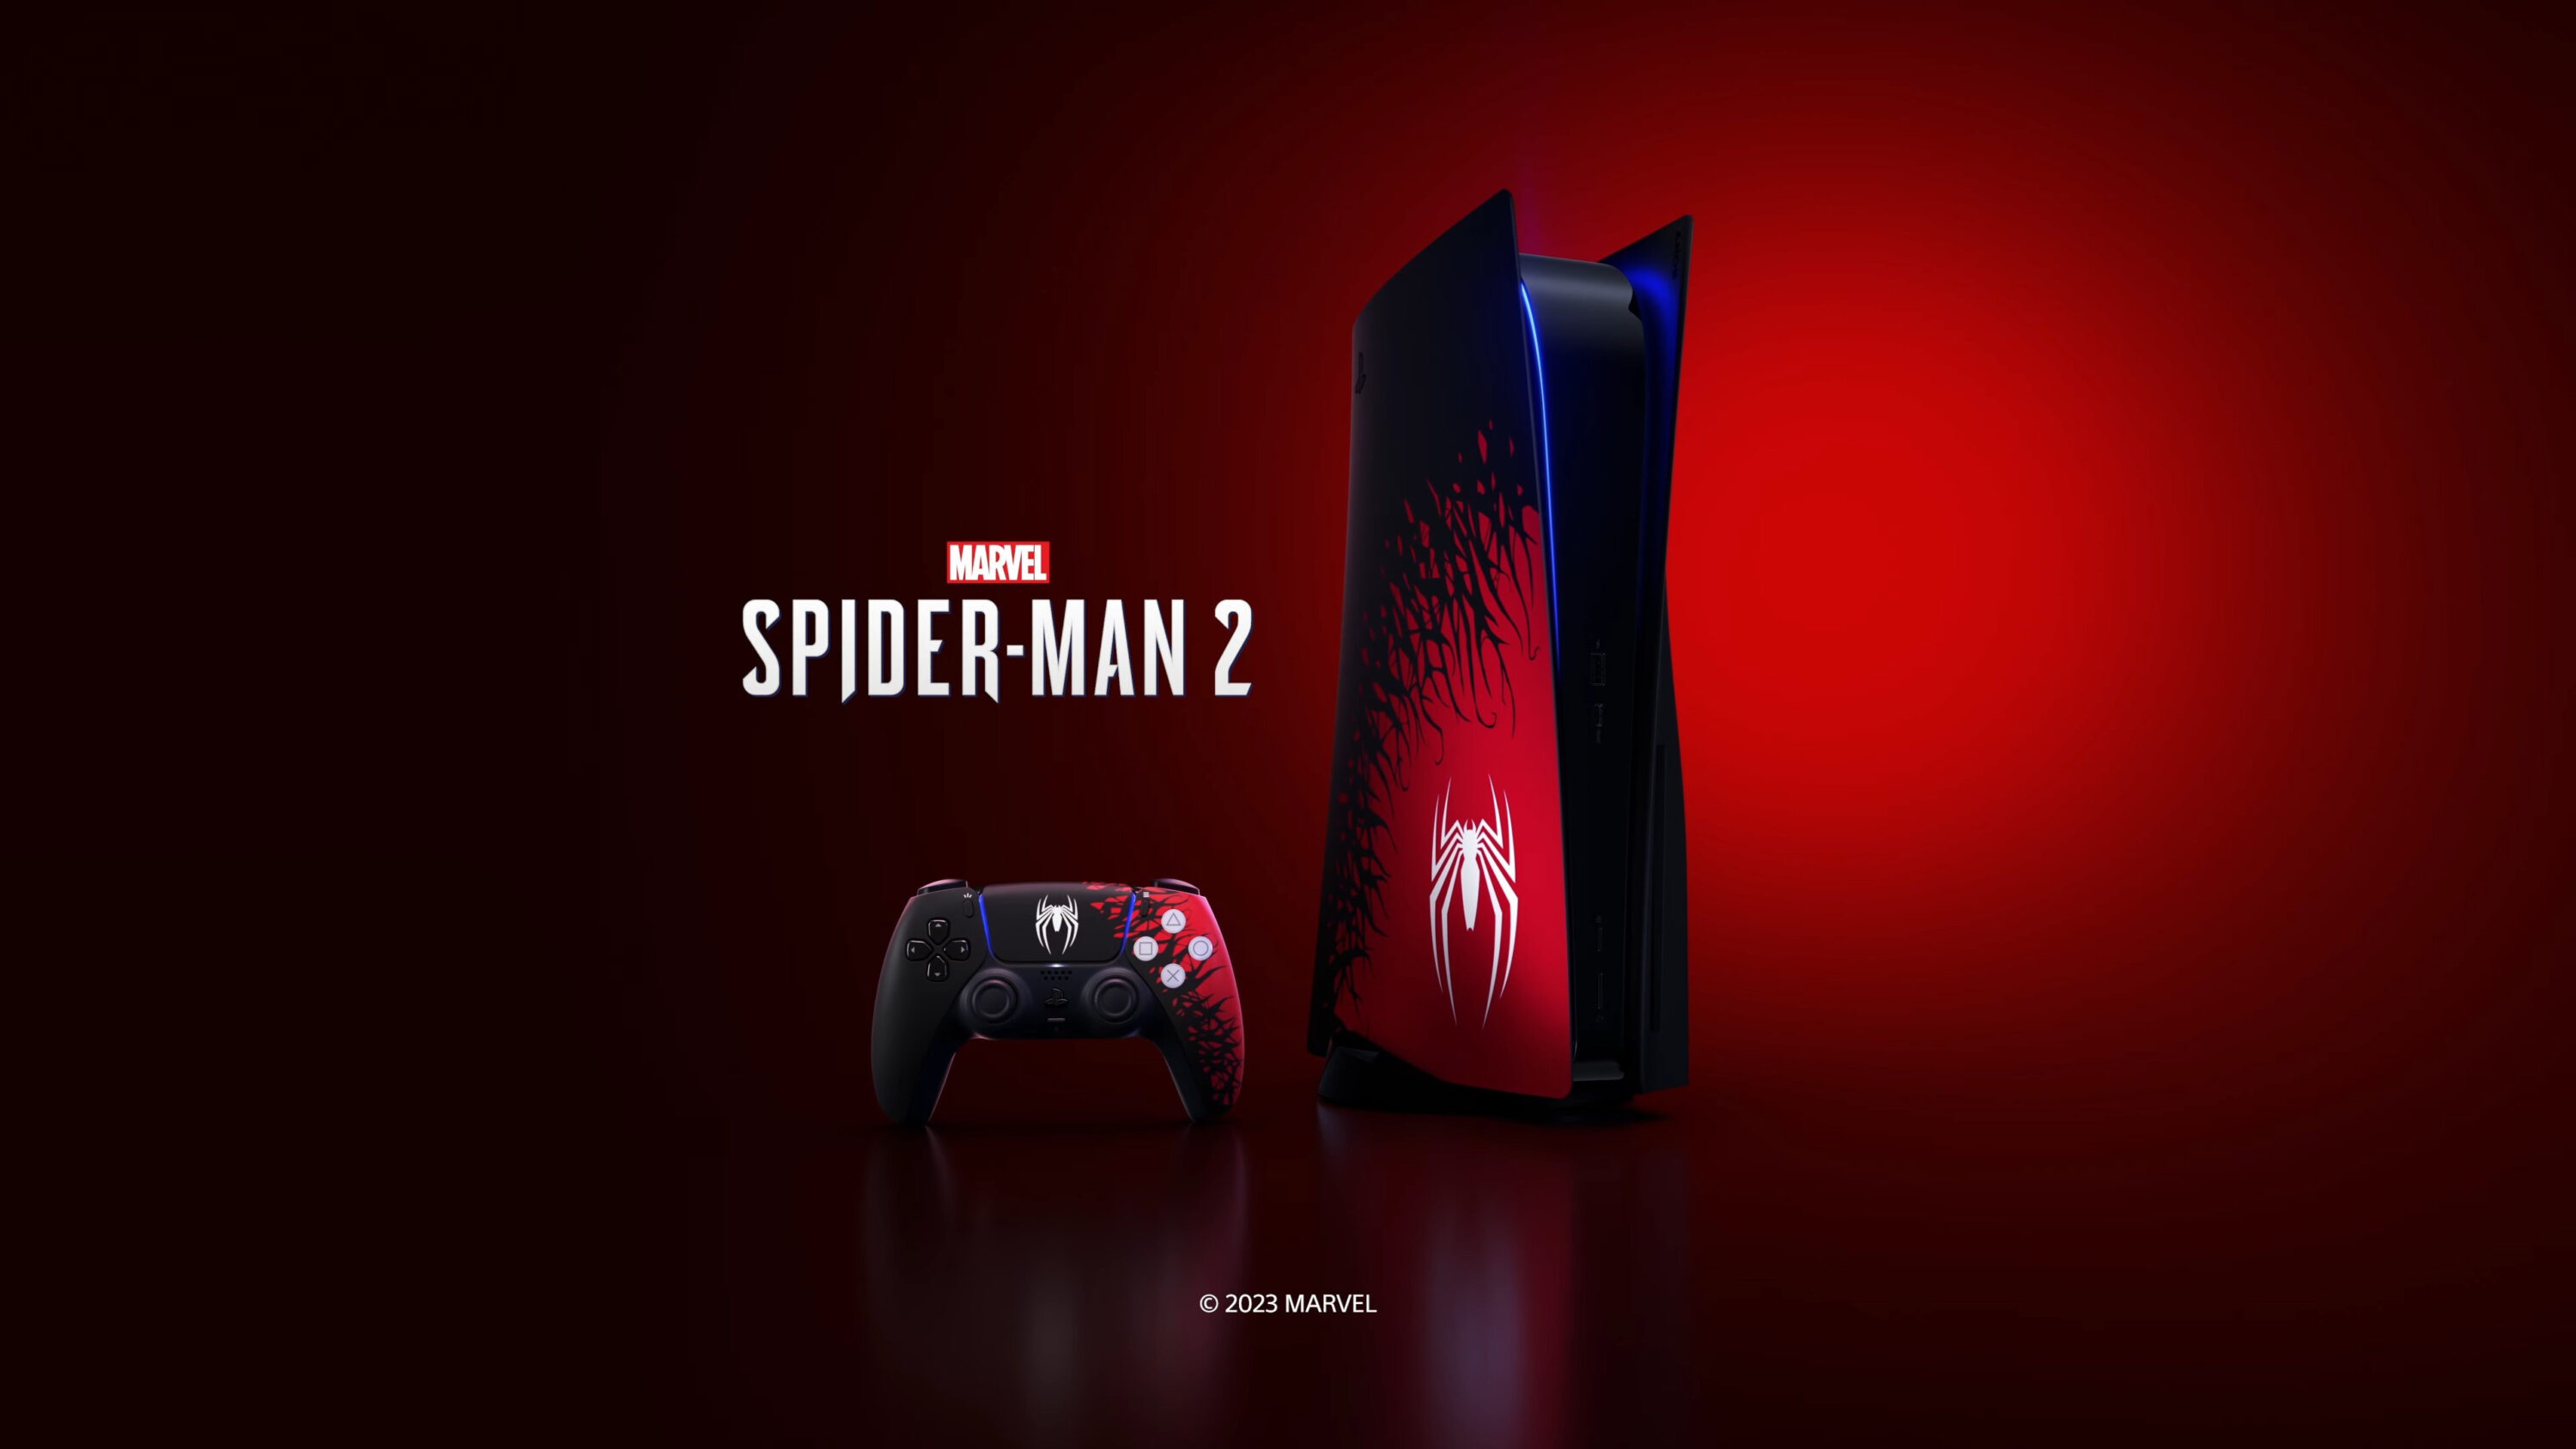 Playstation : Insomniac Games surprend avec une PS5 et une manette Spiderman 2 annoncées après le trailer d'histoire